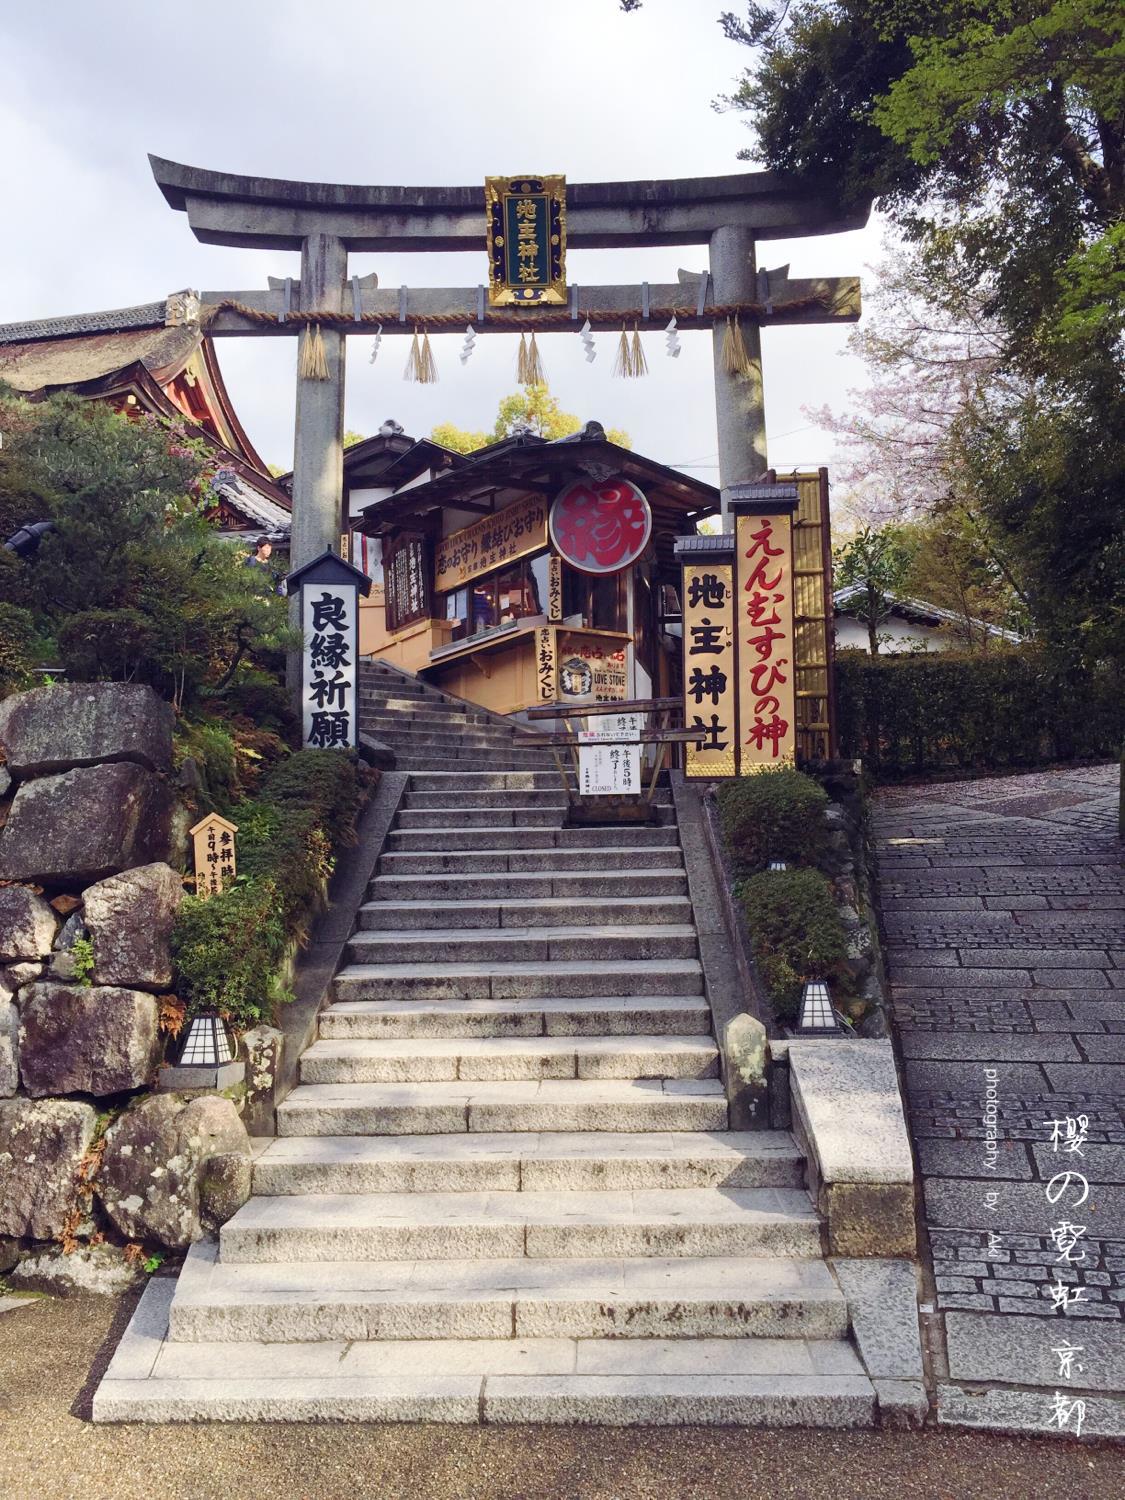 【携程攻略】京都地主神社景点,从清水寺上去就看到了地主神社